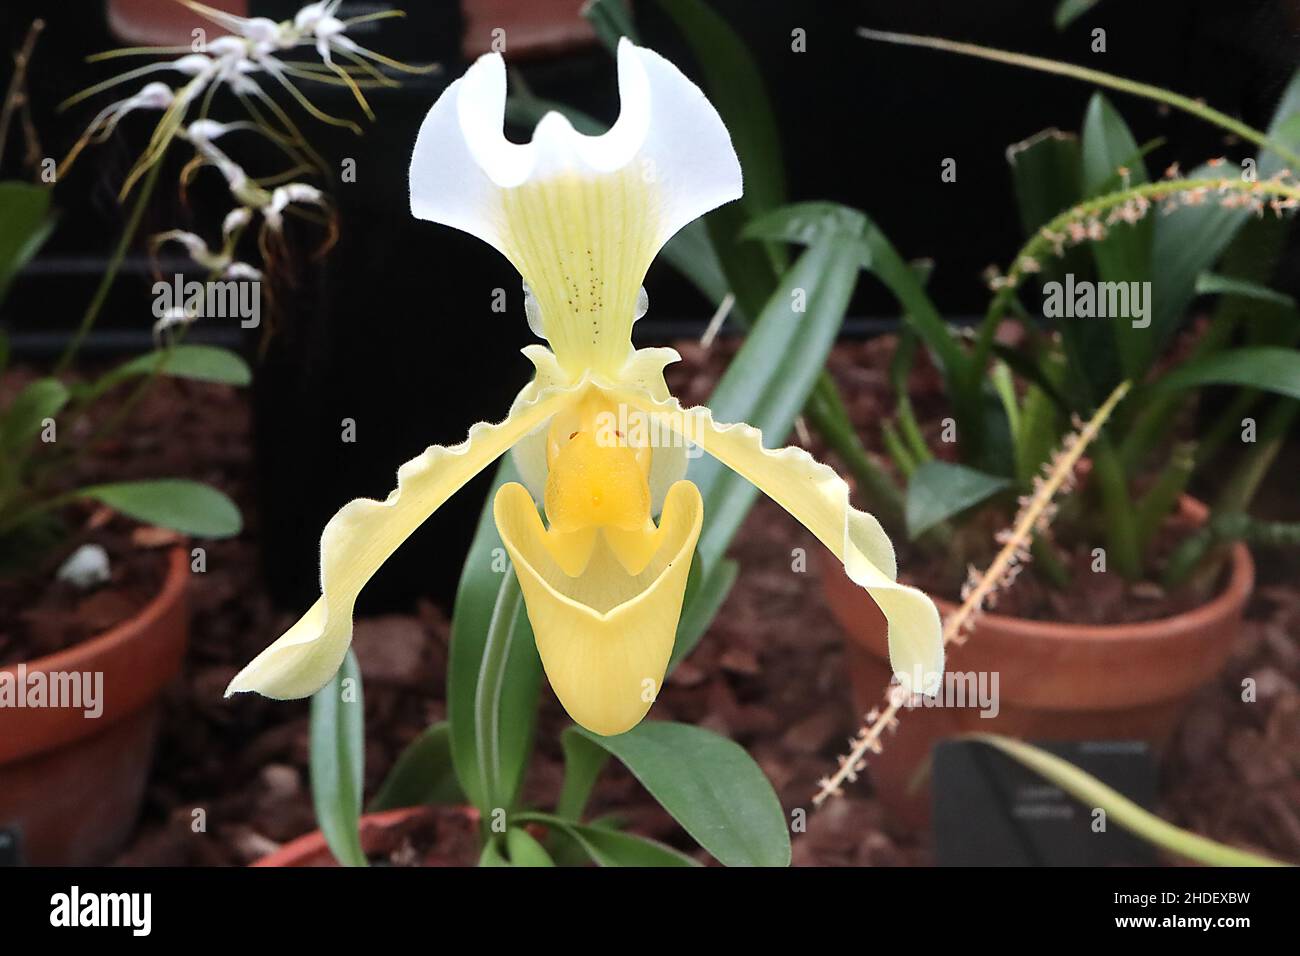 Paphiopaedilum insigne var. Sanderae giallo Asiatico slipper orchidea – giallo pallido bratta superiore con margine bianco, petali giallo pallido margini ondulati, Foto Stock